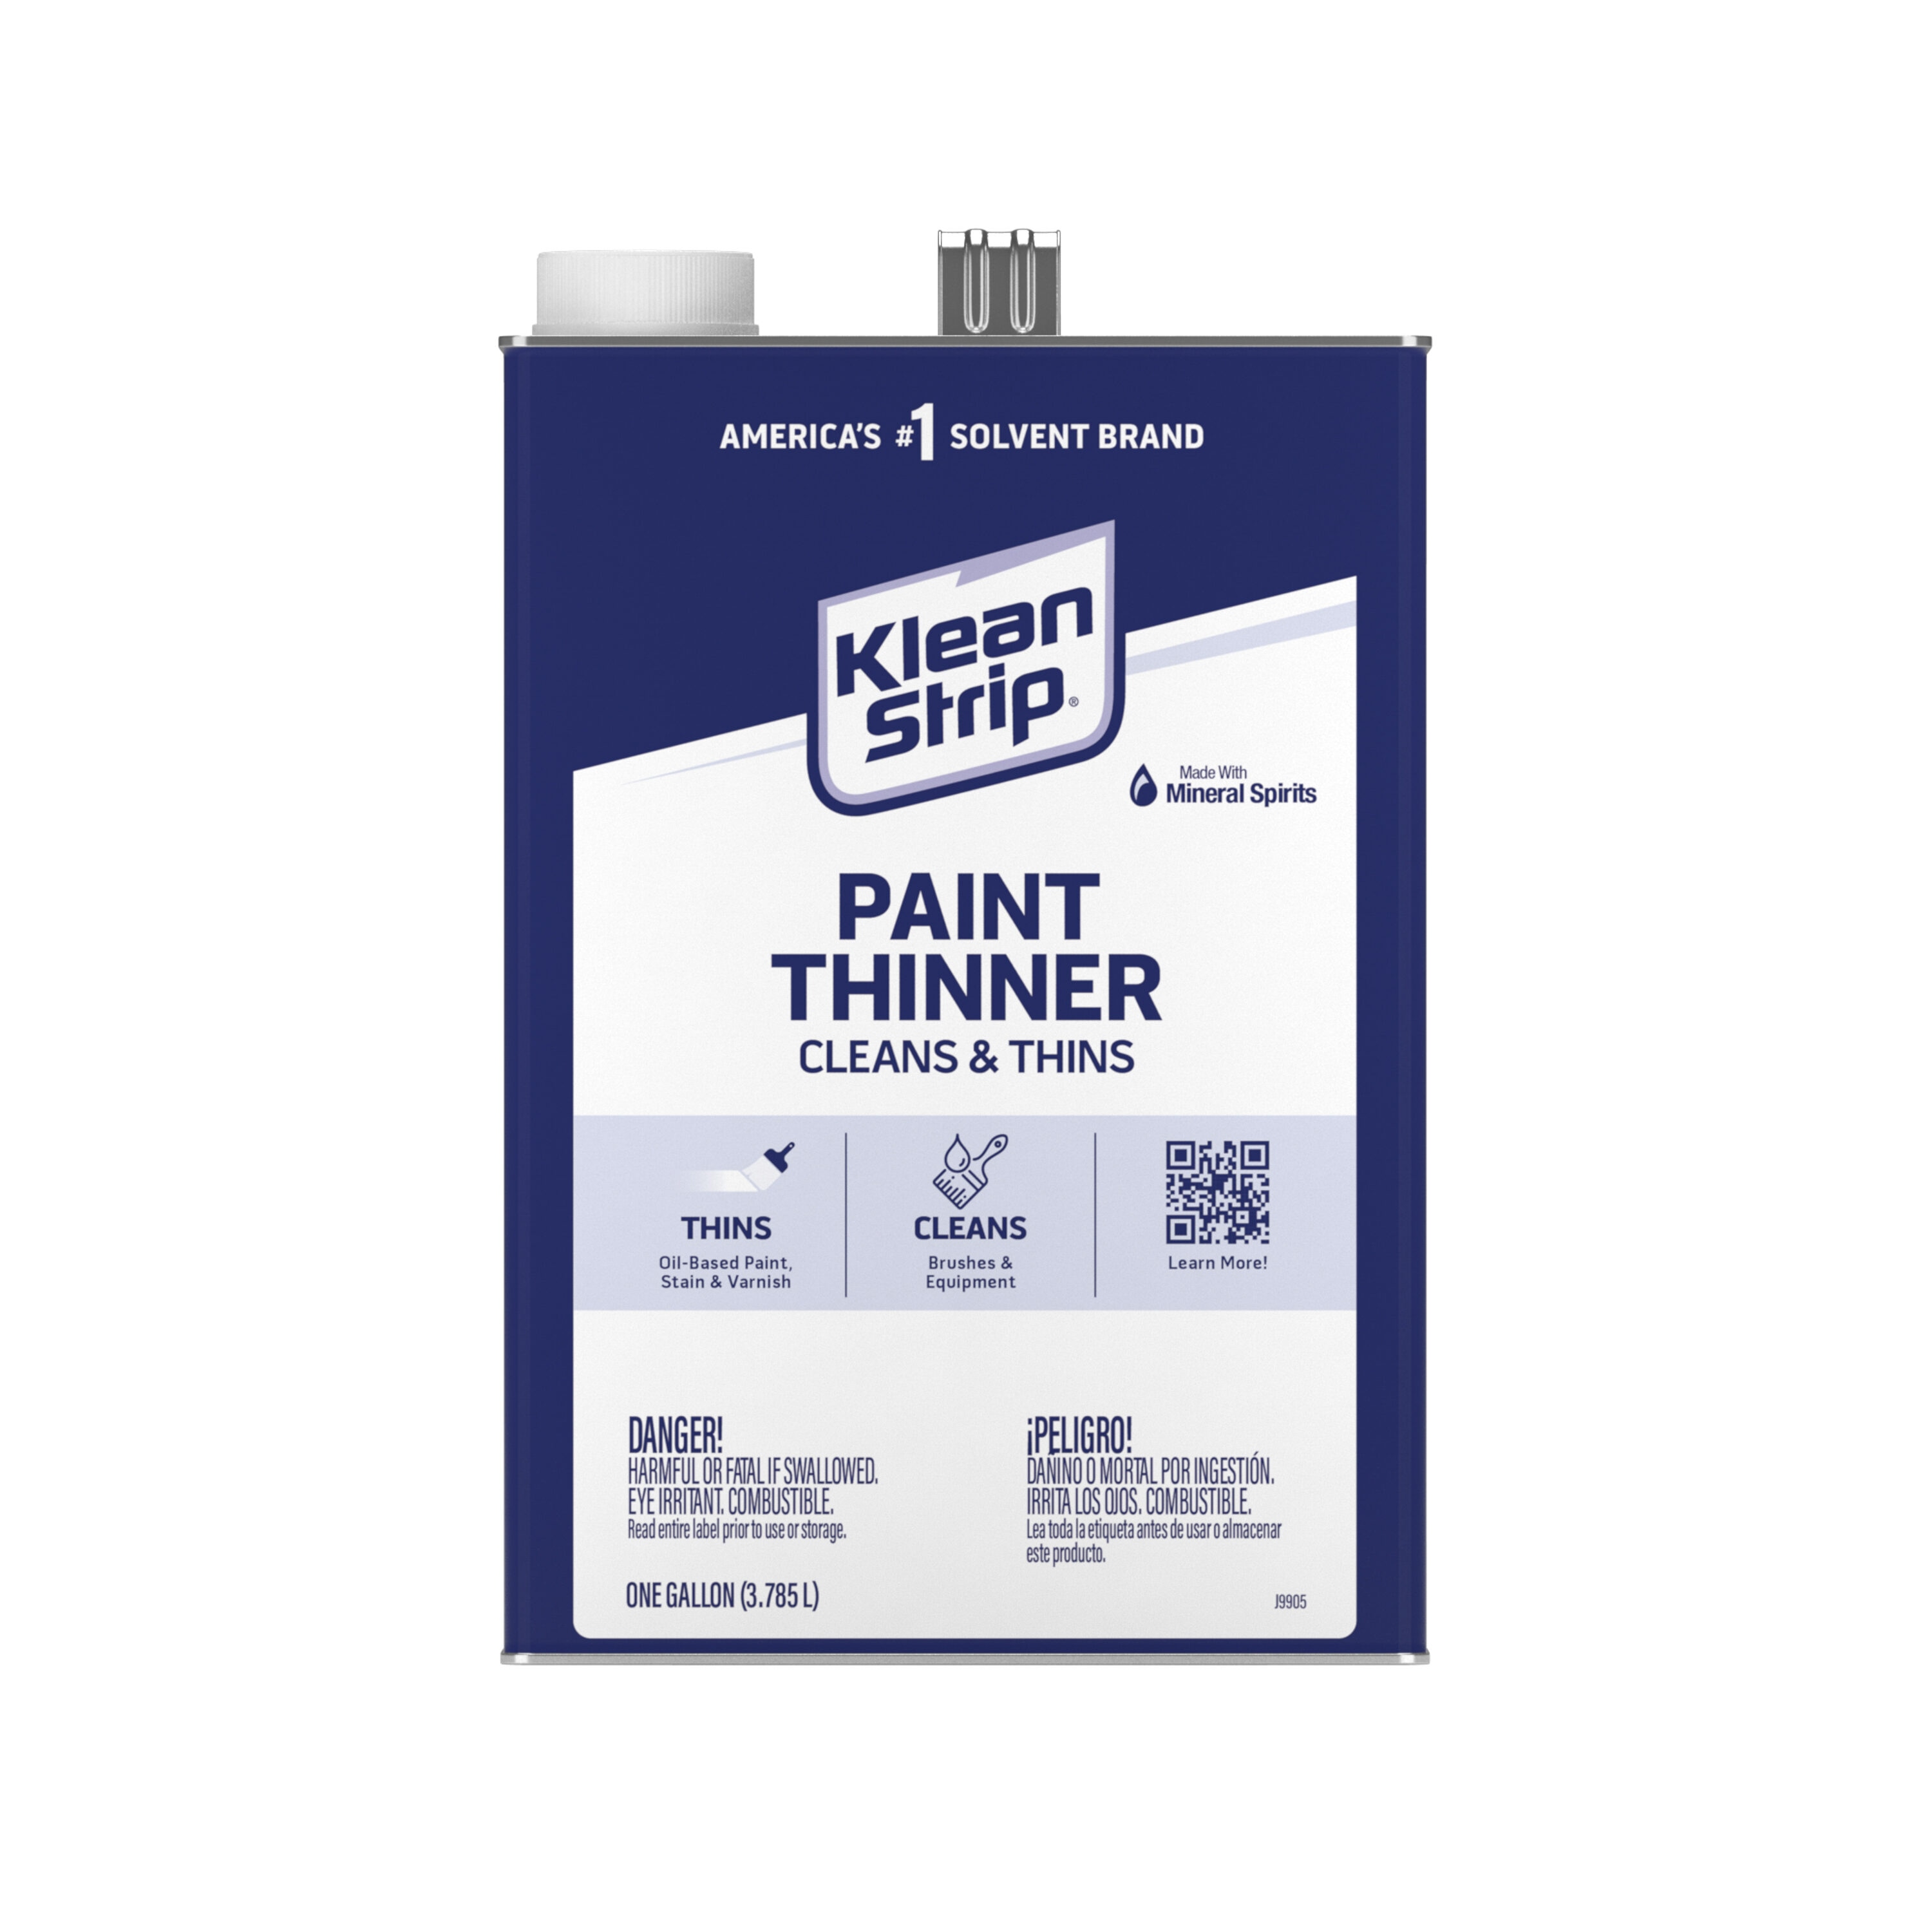 Klean Strip Paint Thinner - 128 fl oz